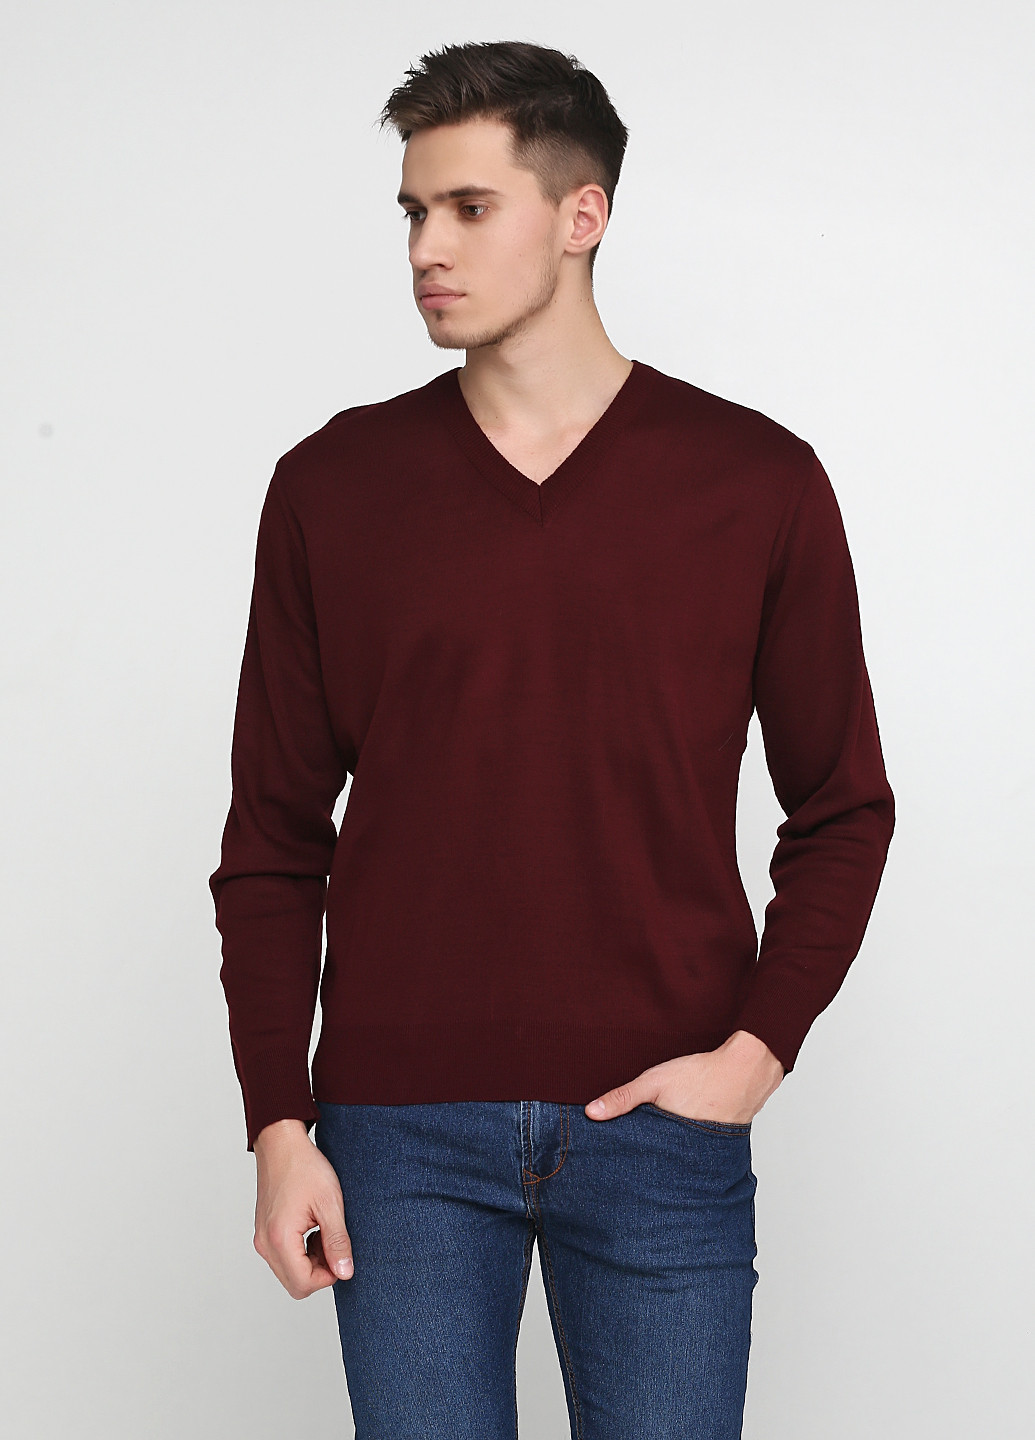 Бордовый демисезонный пуловер пуловер Sunteks